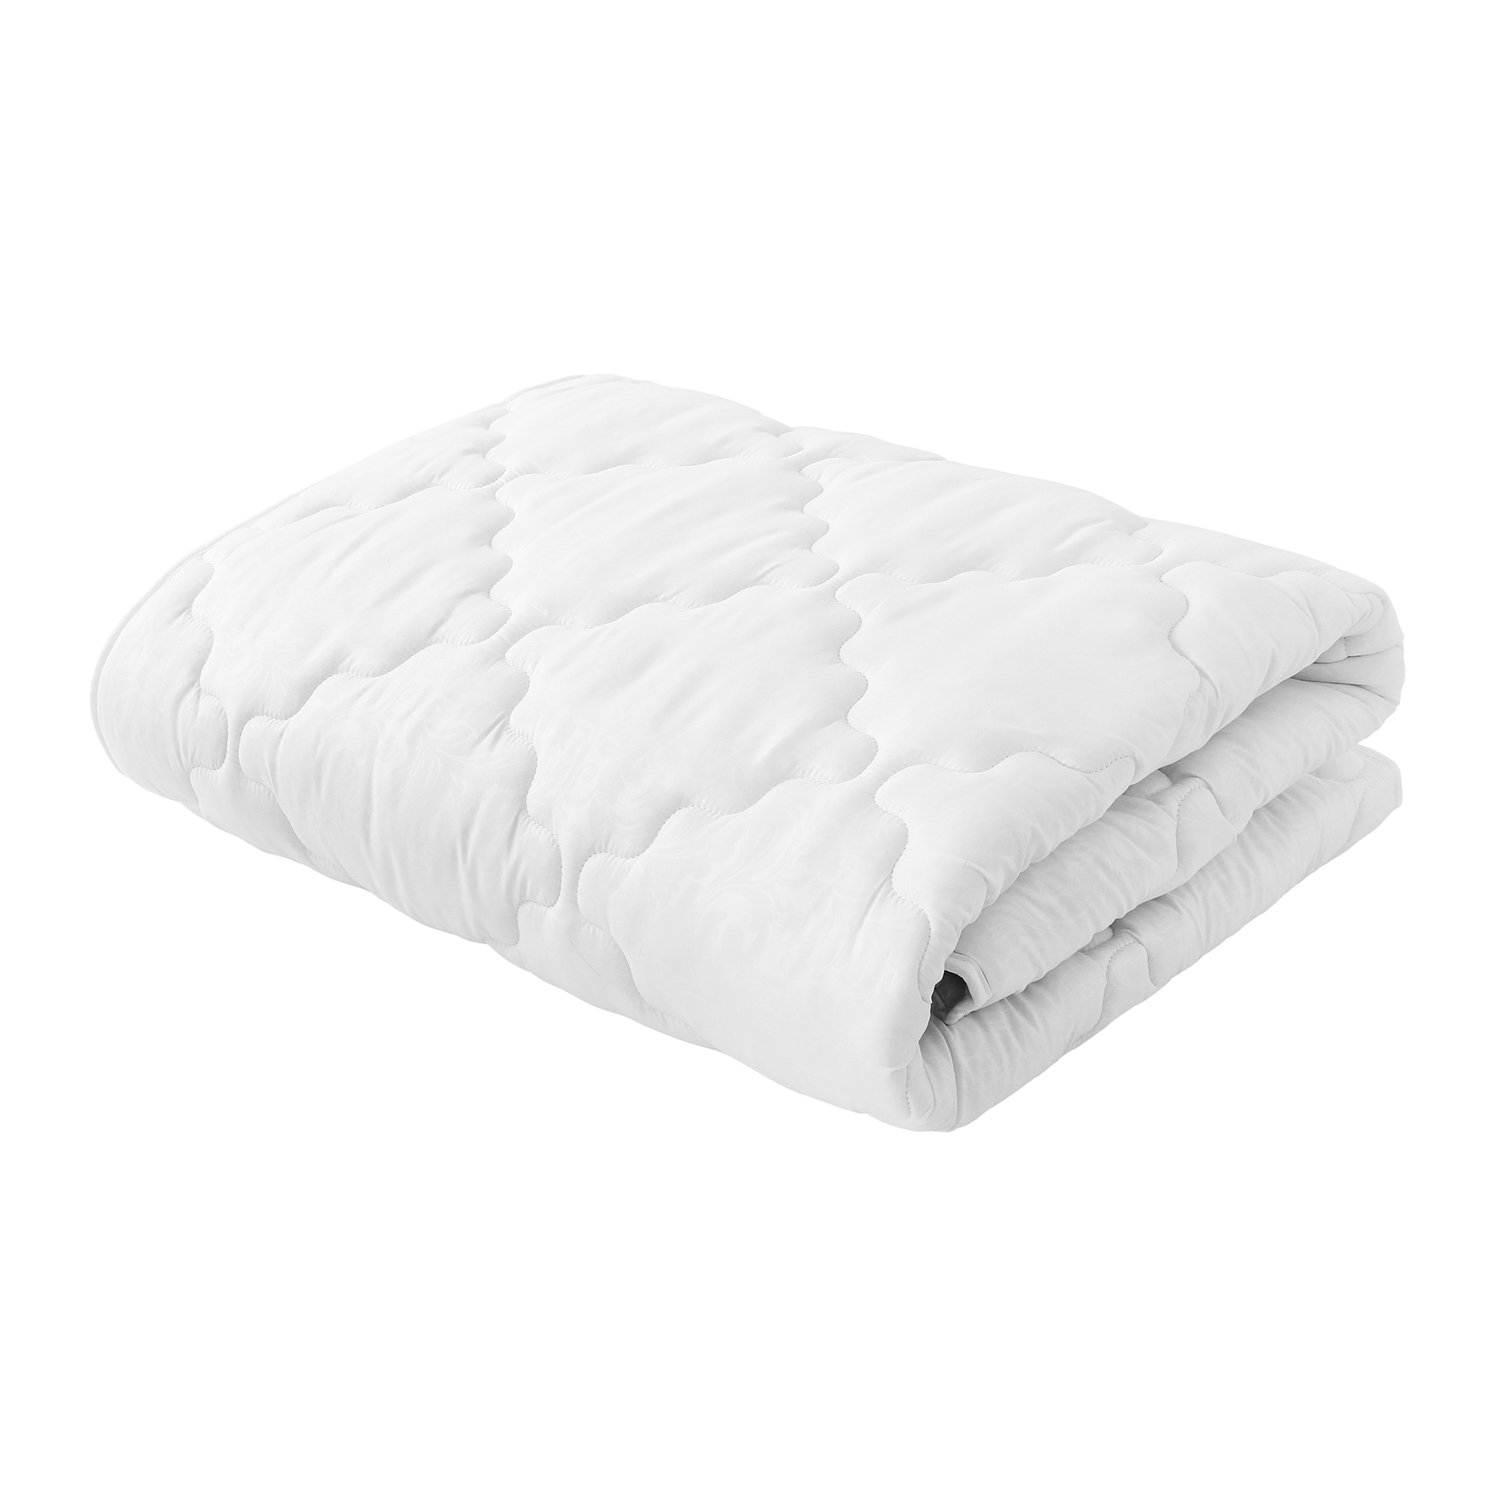 Одеяло Белая ветка (140х205 см), размер 140х205 см samo836835 Одеяло Белая ветка (140х205 см) - фото 1